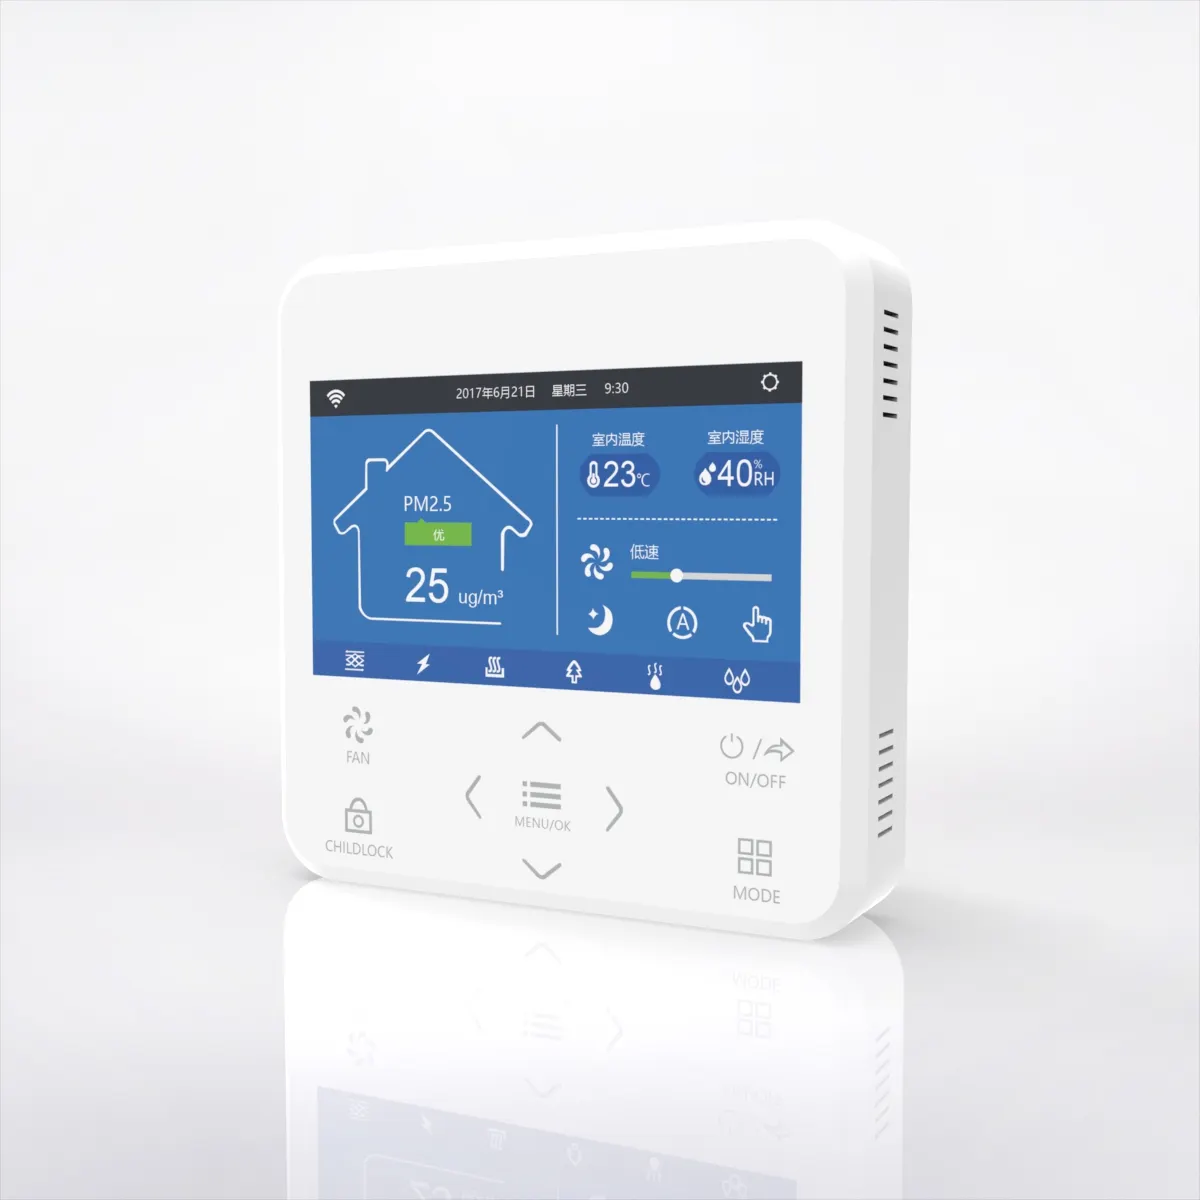 MIA di ventilazione smart PM2.5 impostazione del tempo di controller per HVACA erv hrv recuperator scambiatore di calore strumenti hvac controller smart